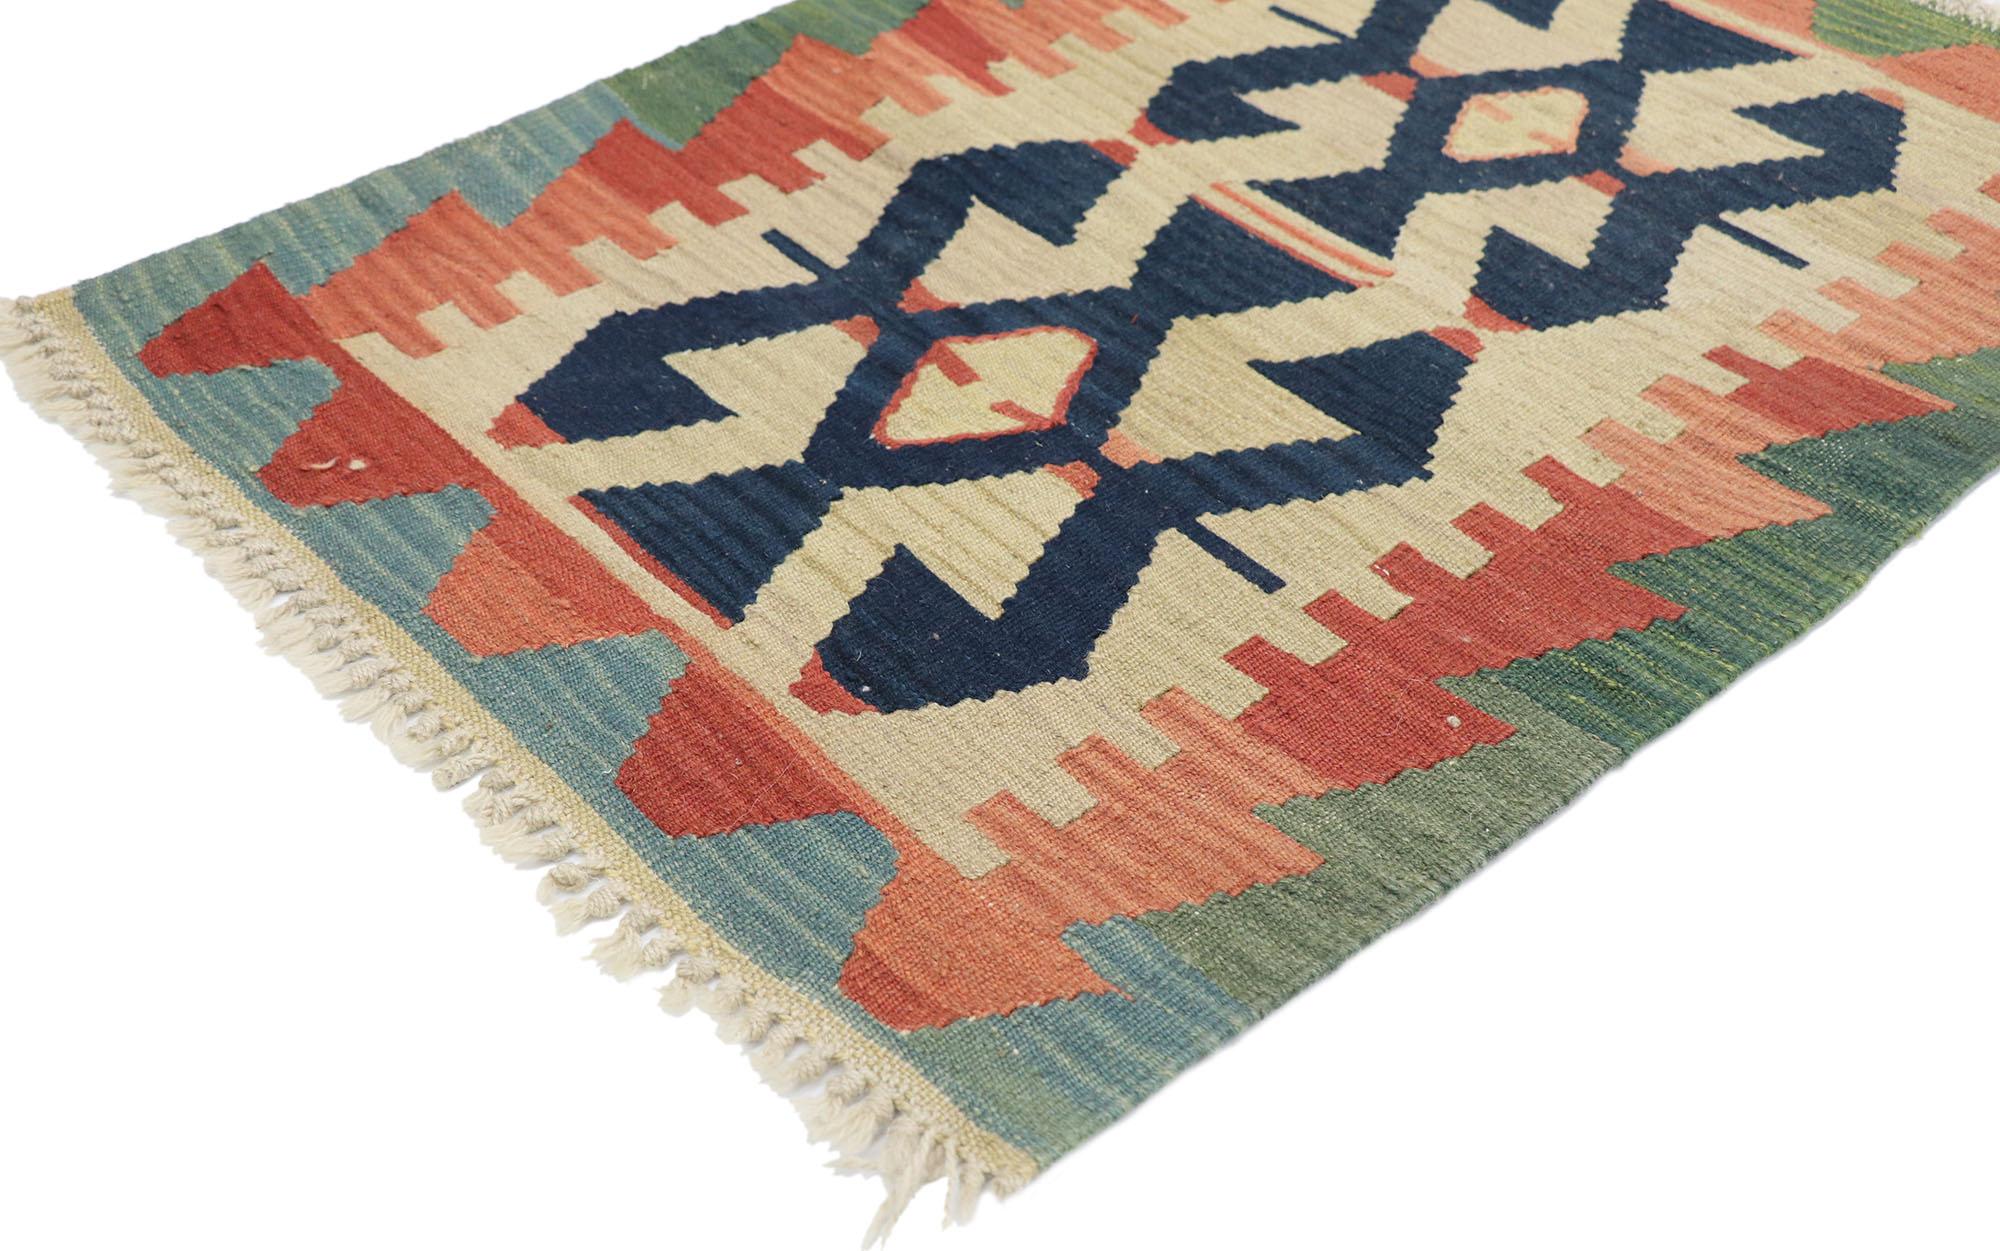 77893 Tapis persan vintage Rug & Kilim de style tribal 02'01 x 02'10. Rempli de détails minuscules et d'un design expressif audacieux combiné à des couleurs vibrantes et à un style tribal, ce tapis kilim persan vintage en laine Shiraz tissé à la